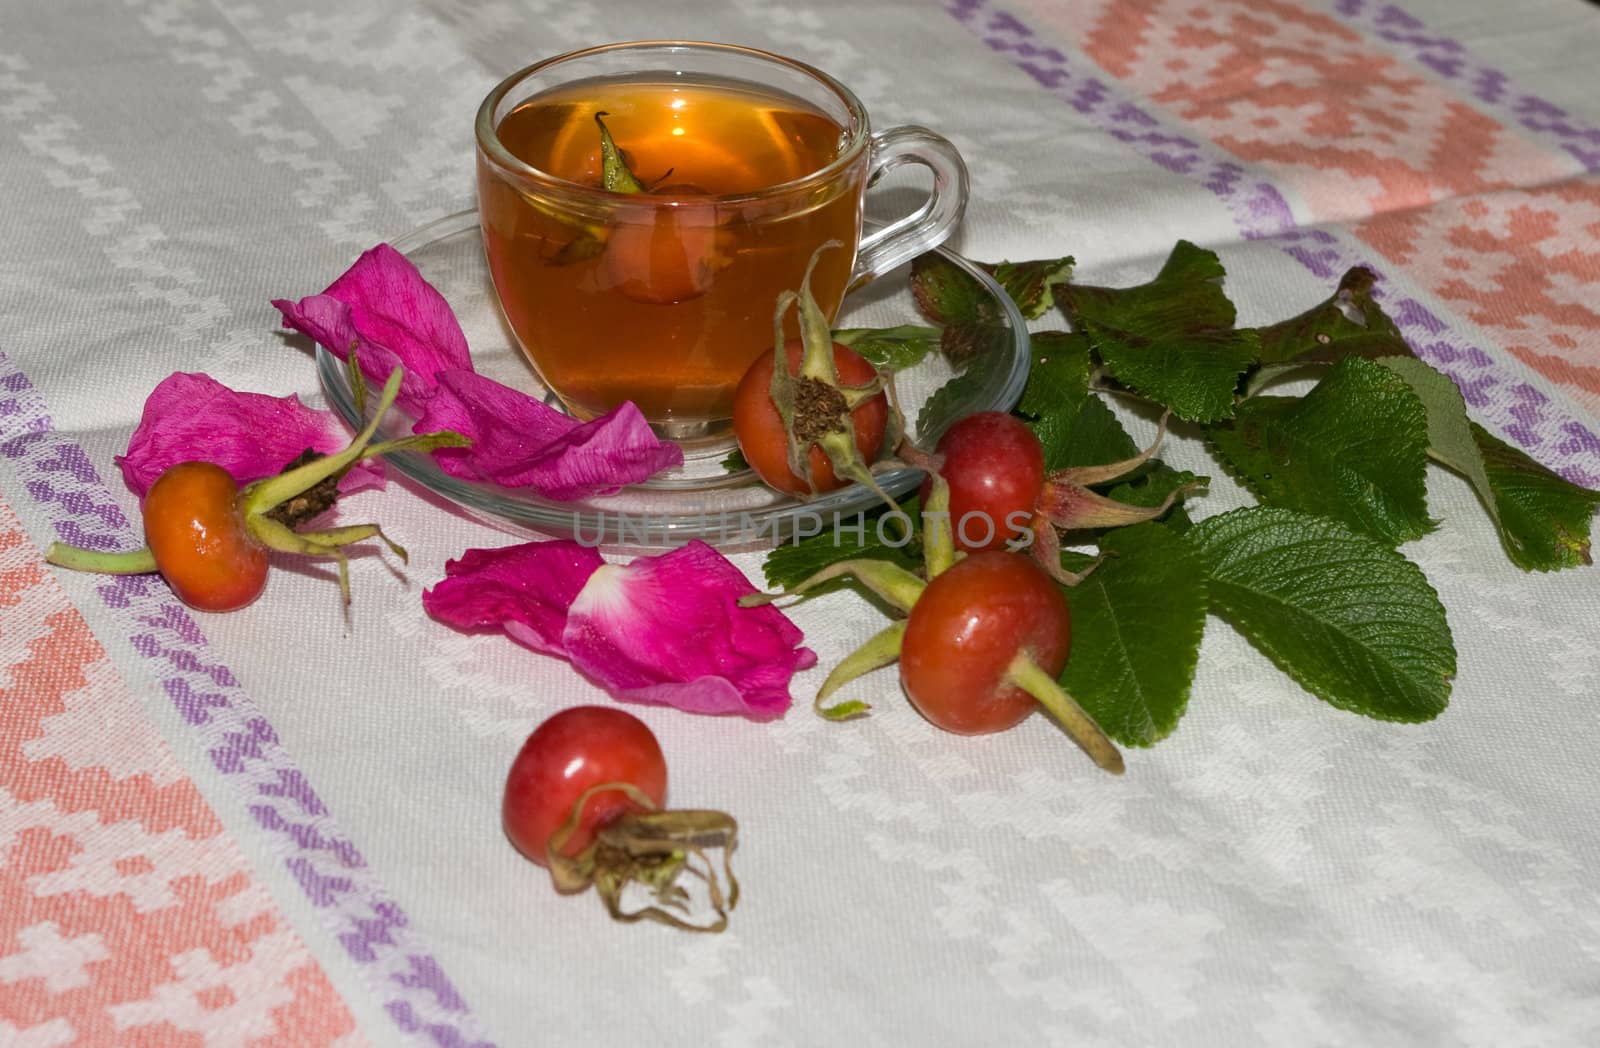 Curative tea with a dogrose by soloir